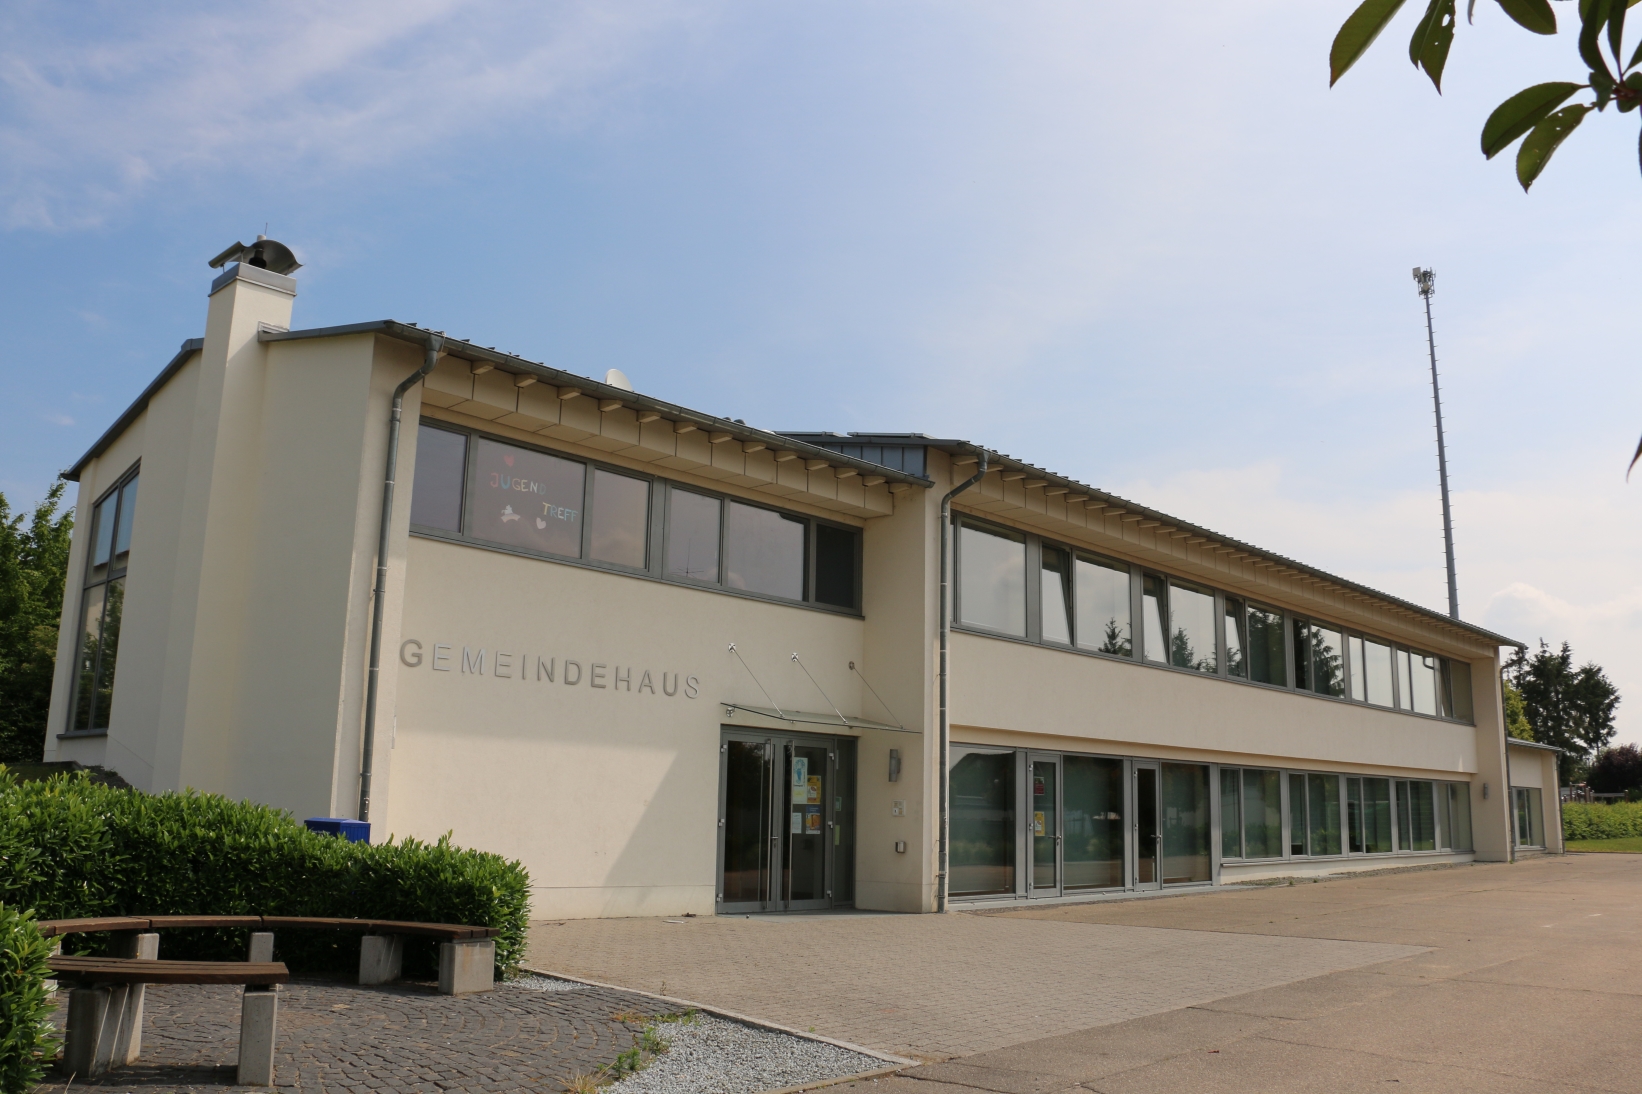 Gemeindehaus in Knittelsheim